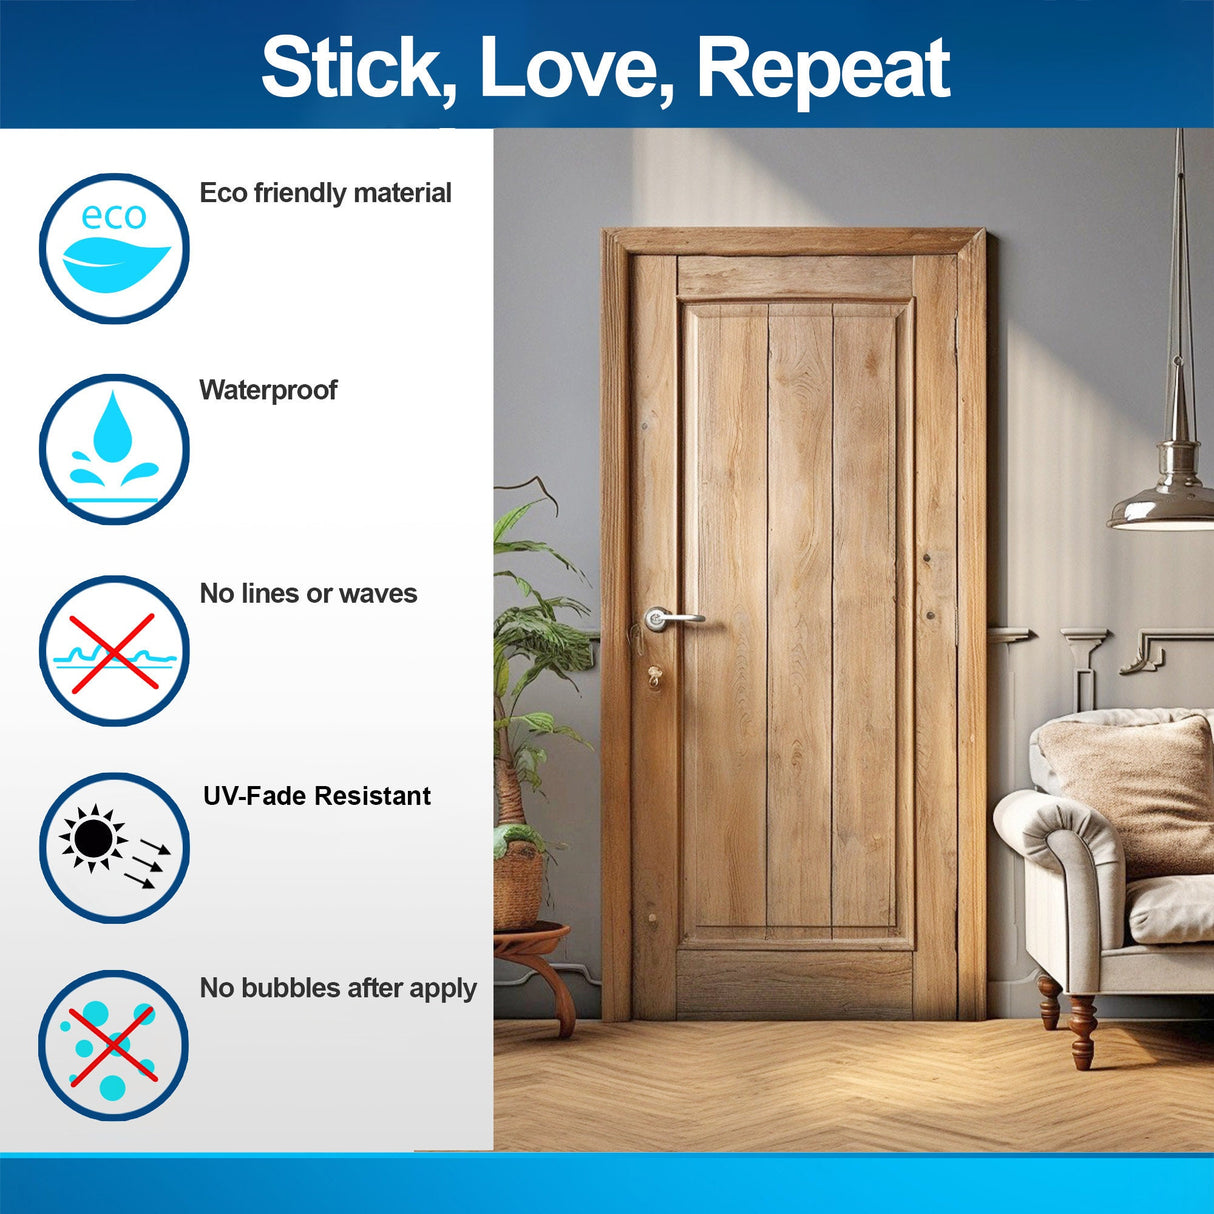 Rustic Brown Wood Barn Door Wallpaper Sticker - DIY Peel and Stick Wooden Door Cover Decal